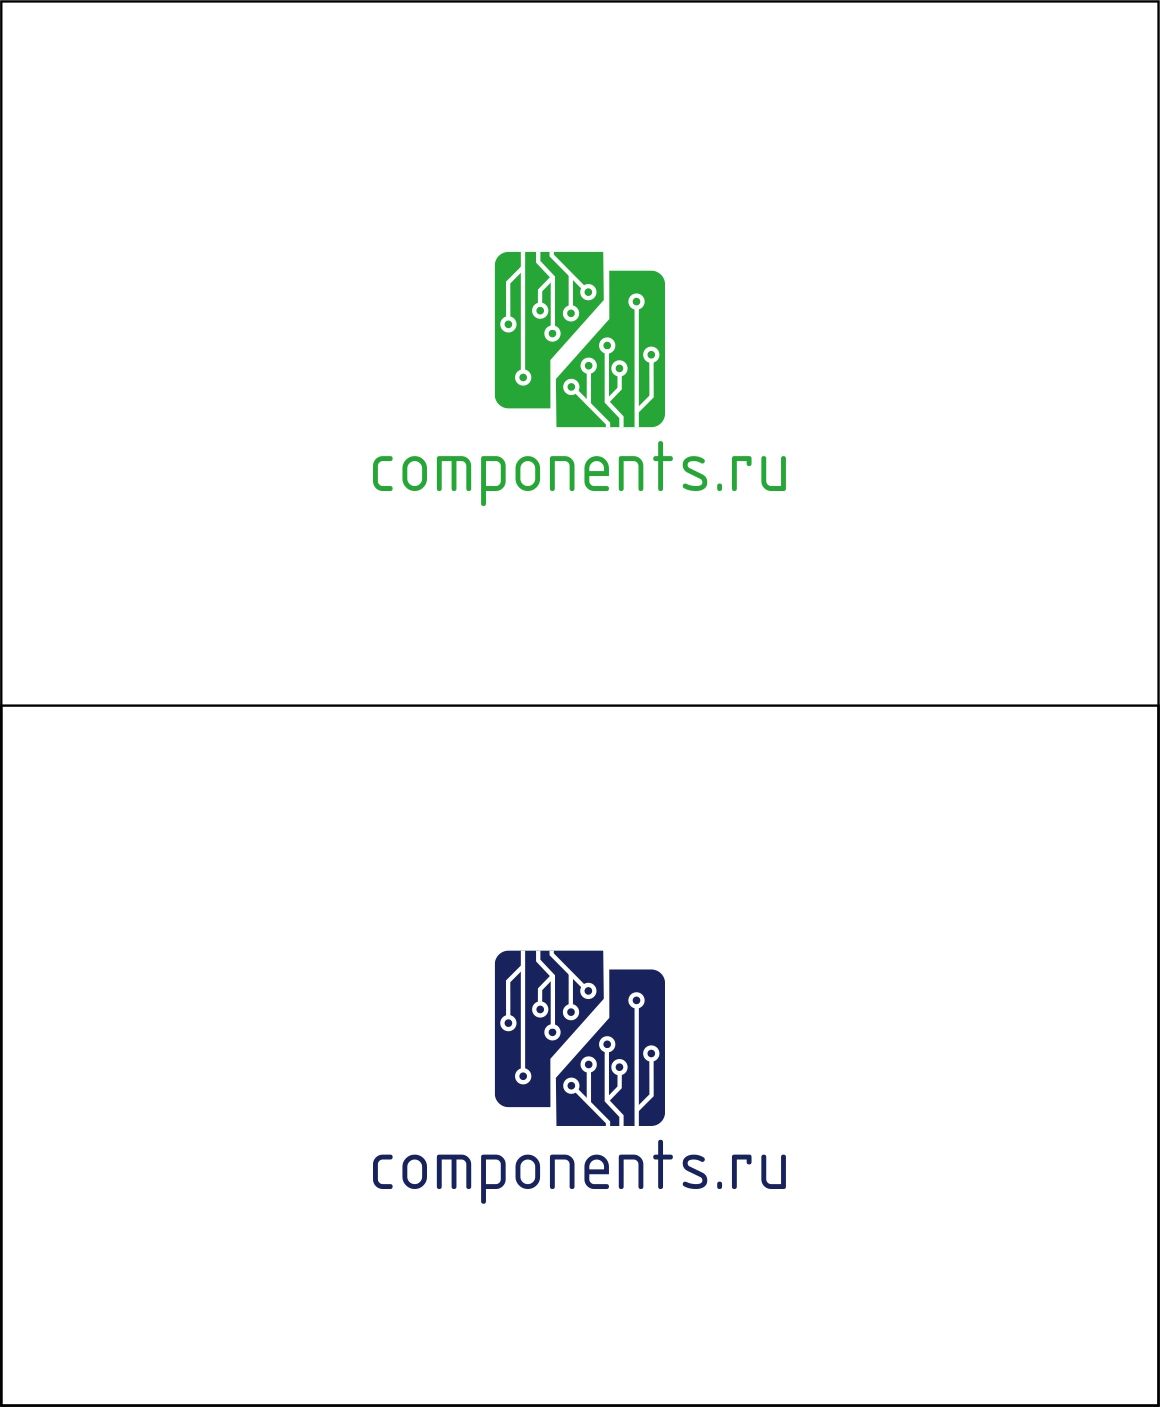 Лого и фирменный стиль для соmpоnеnts.ru - дизайнер Dasha12345